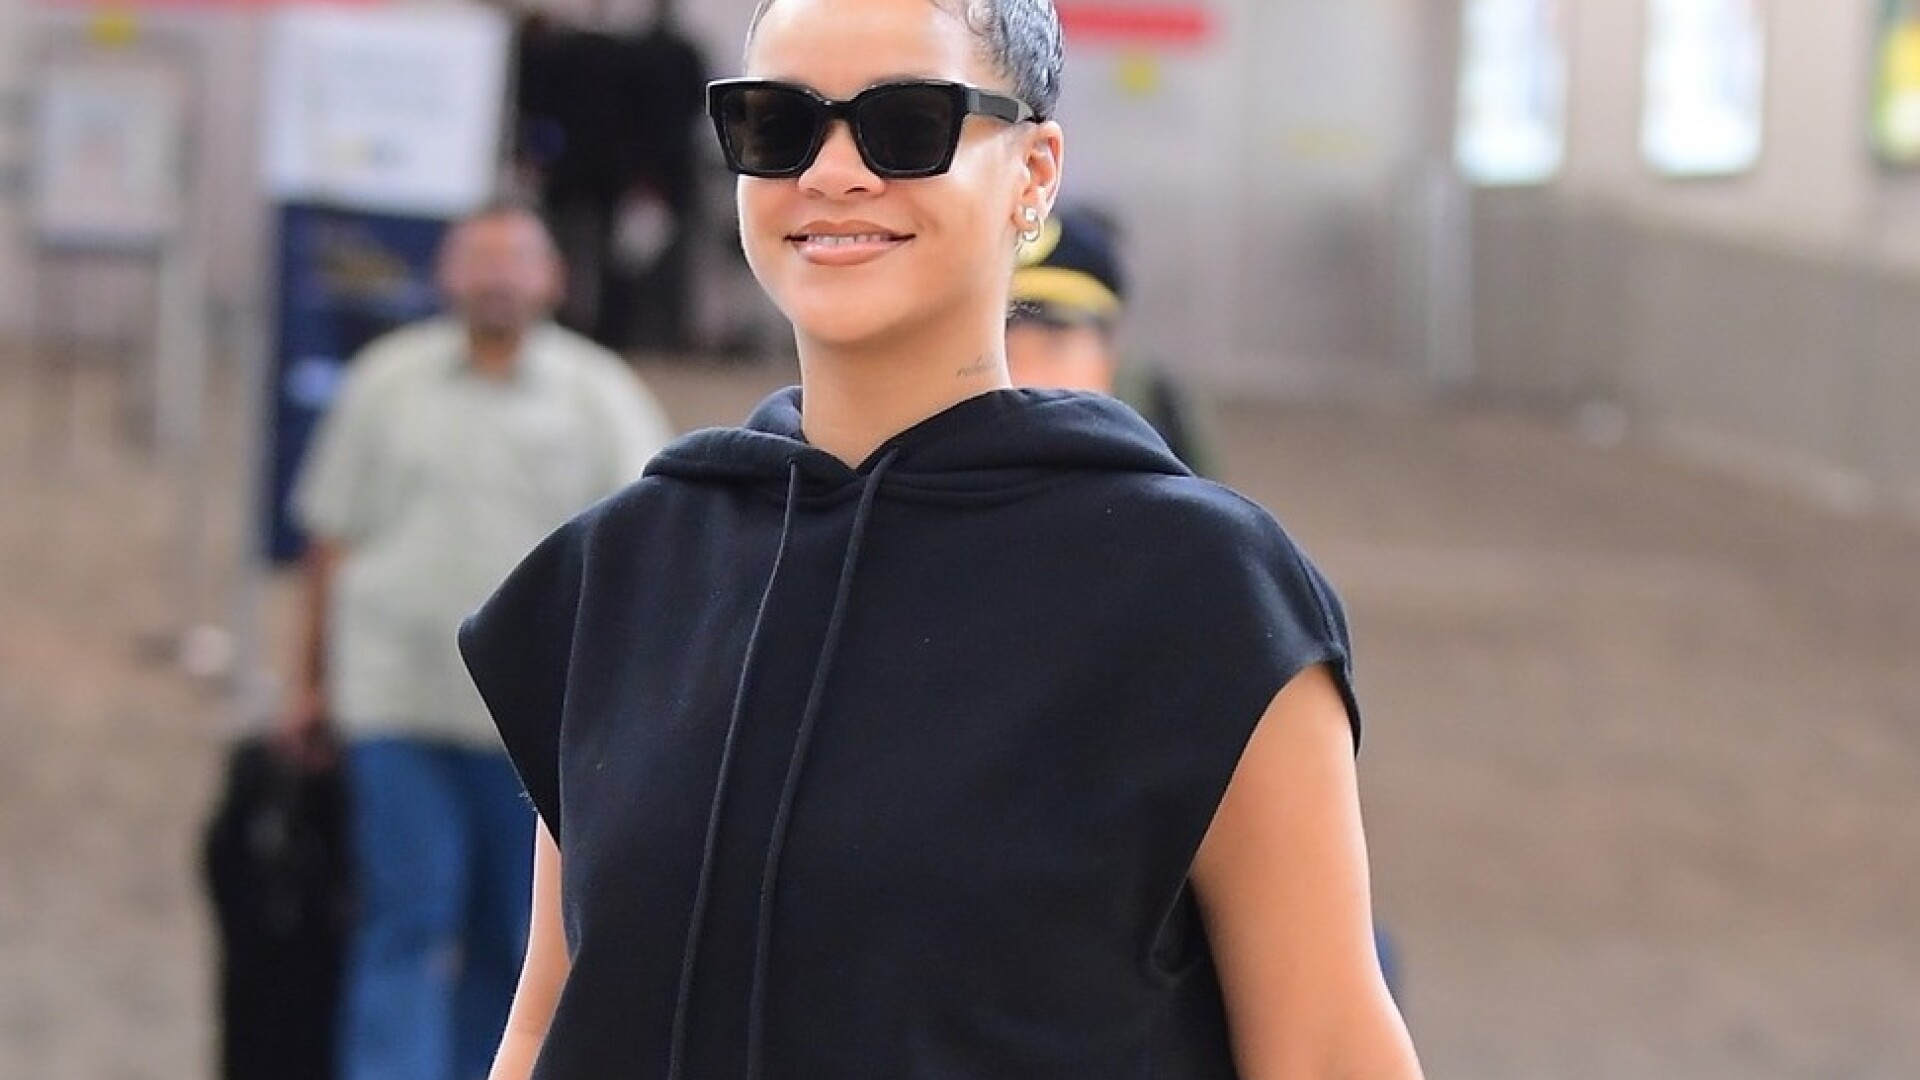 Accesoriul minuscul purtat de Rihanna la aeroport. A stârnit zâmbetele tuturor